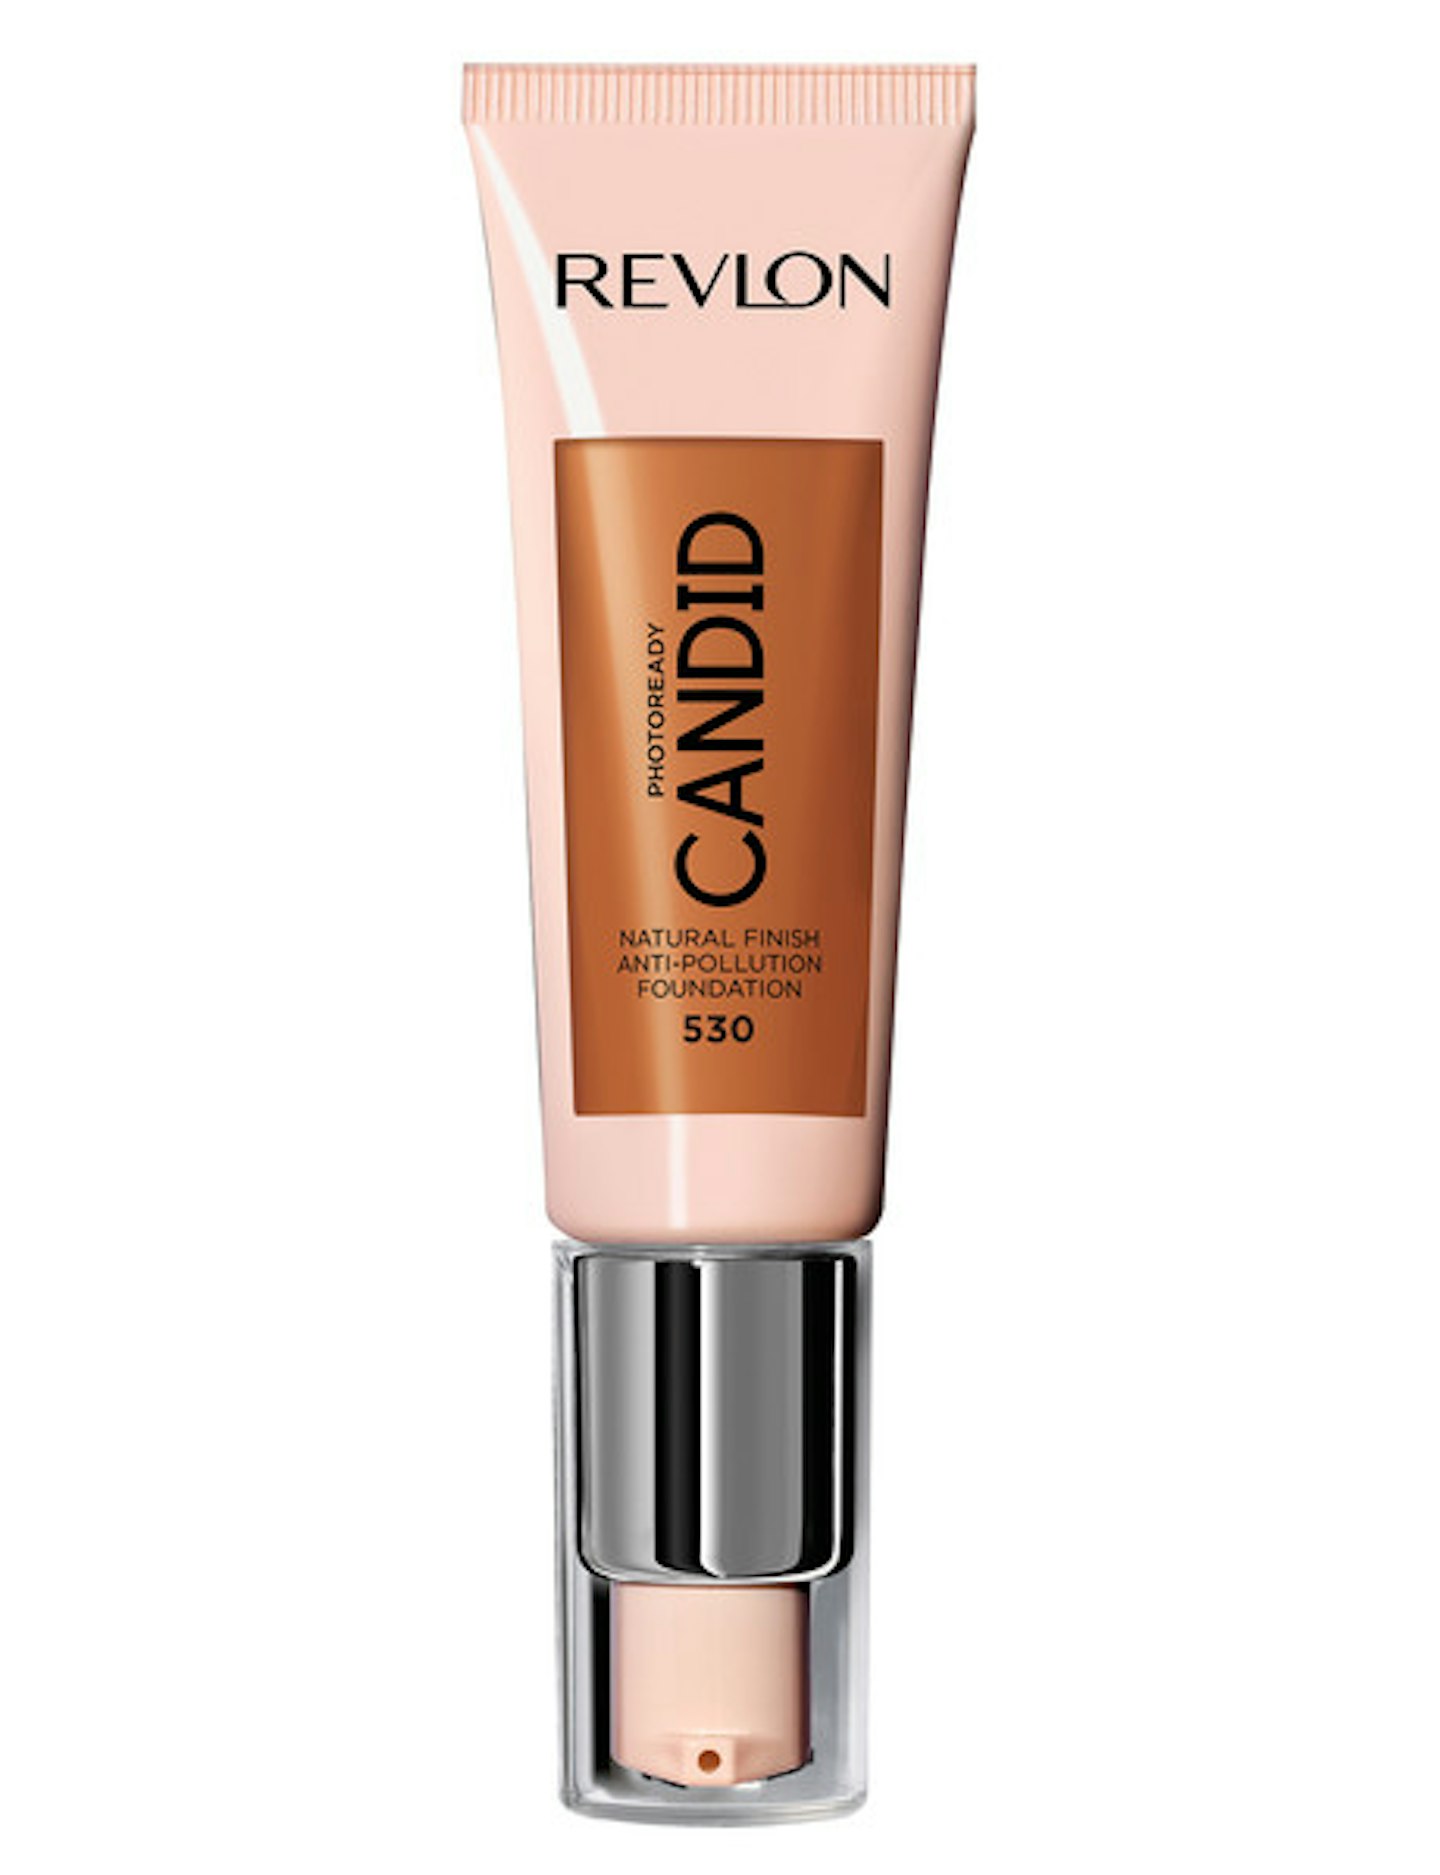 Best foundation for oily skin - Revlon